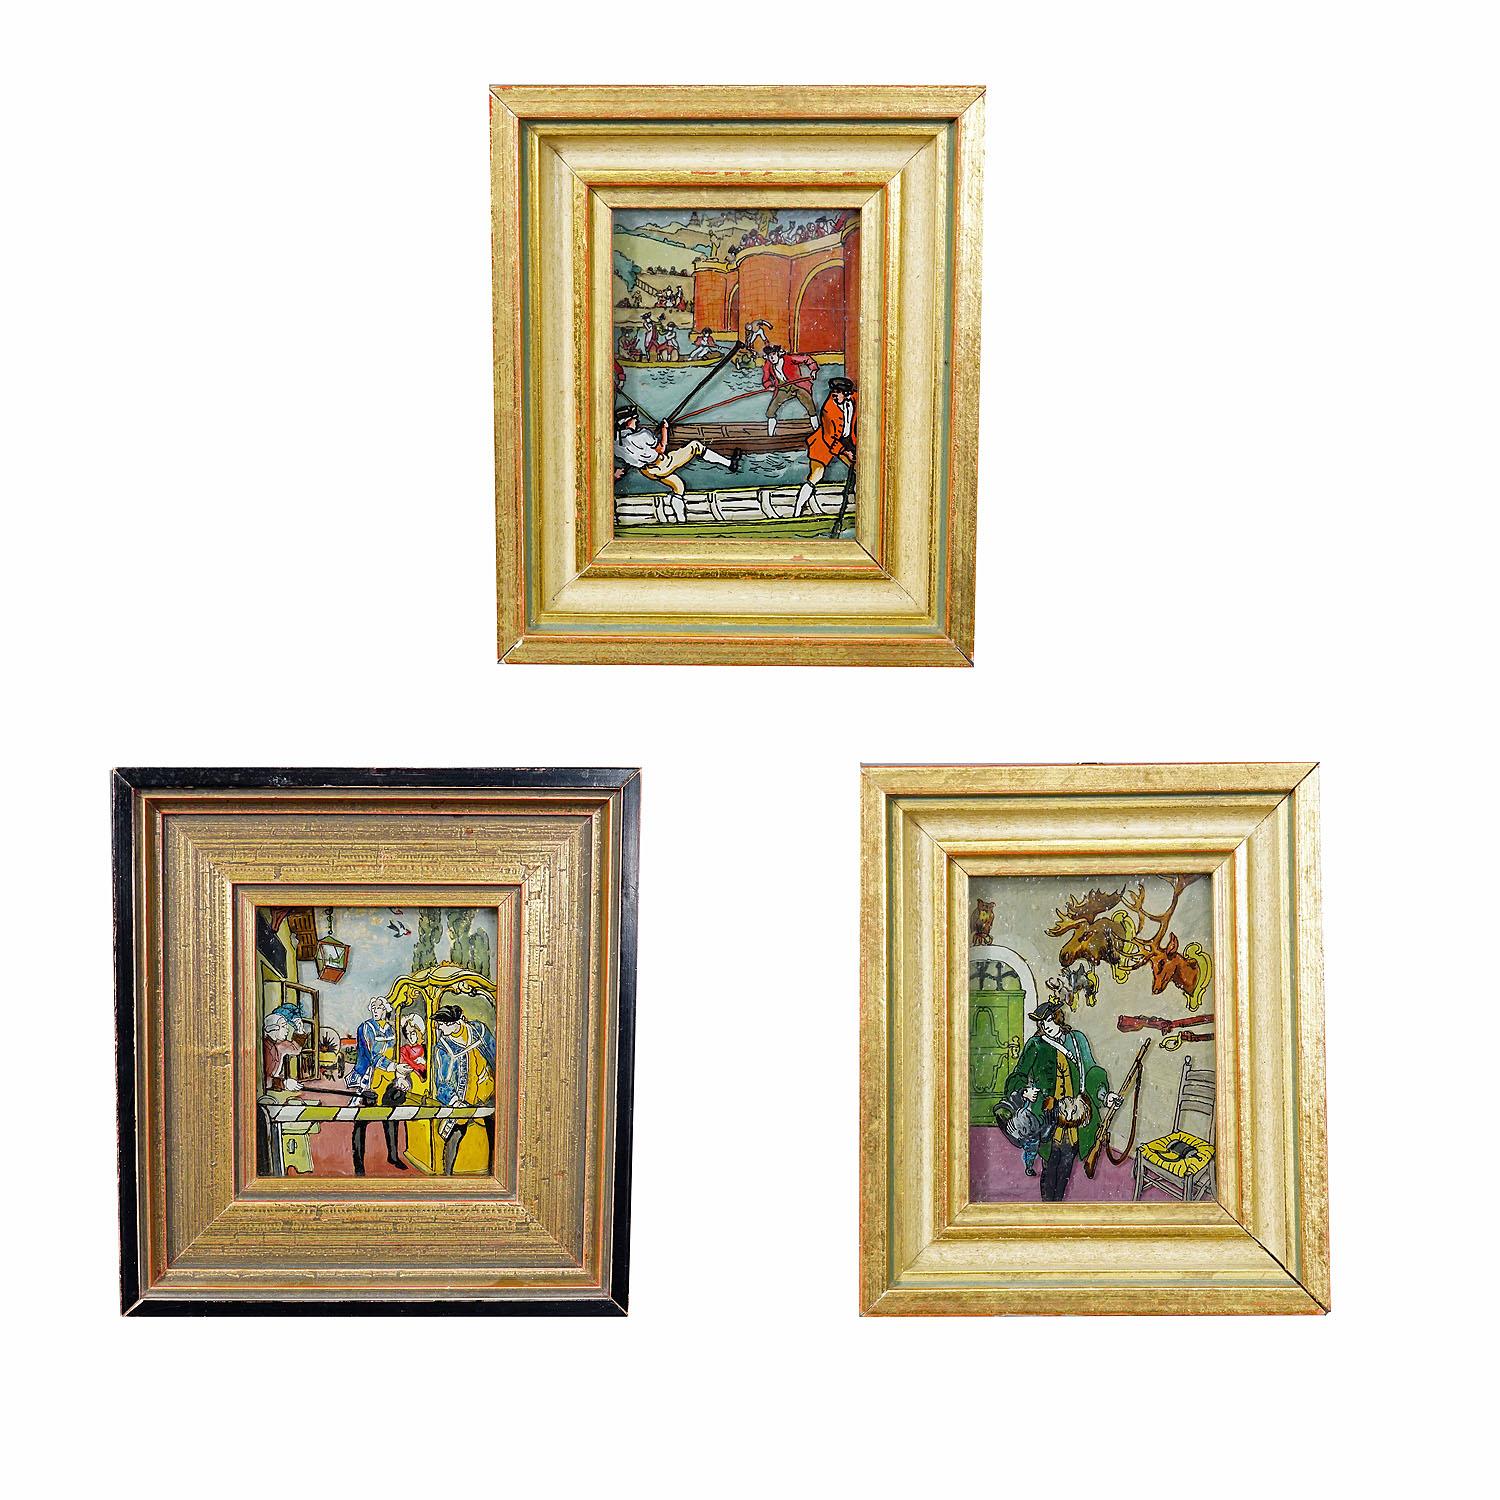 Trois tableaux vintage sous verre représentant des scènes de Biedermeier

Un ensemble de trois peintures derrière le verre représentant des scènes de la période Biedermeier. Peint à la main en Allemagne vers les années 1950 et encadré avec des